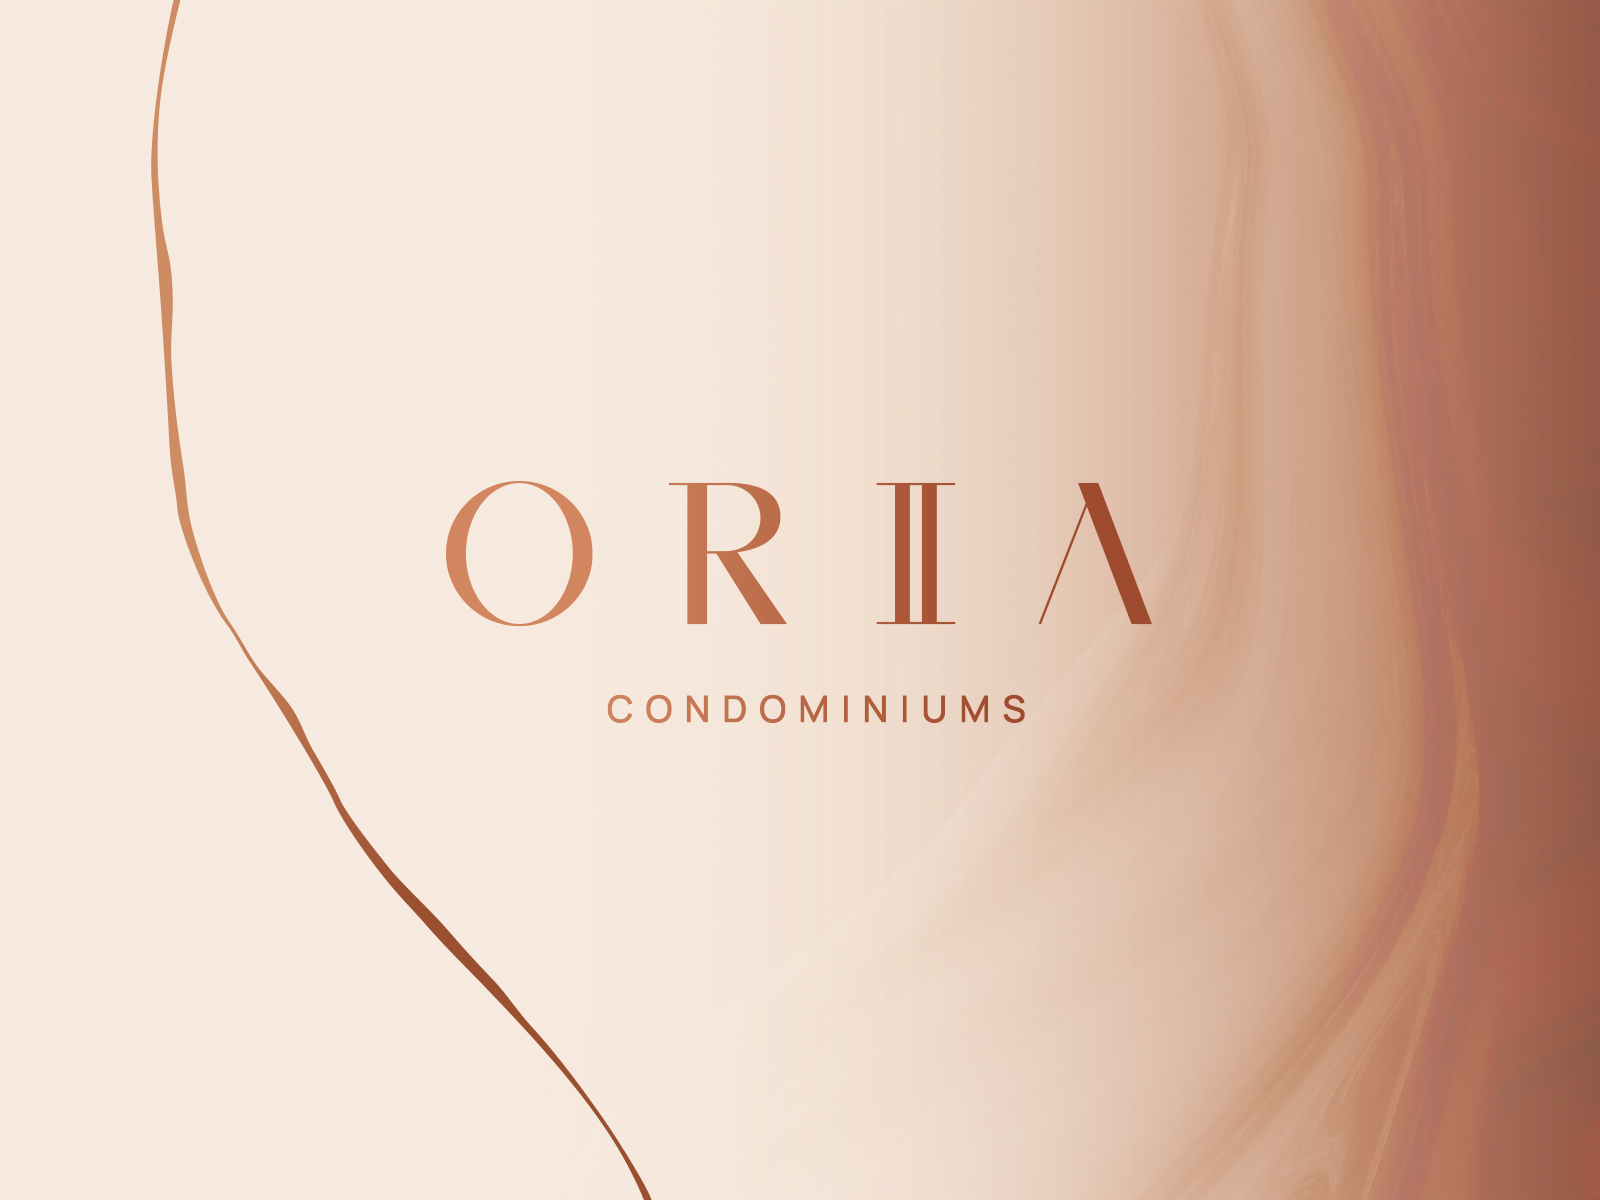 Oria Condominiums Phase 2 unveils itself!